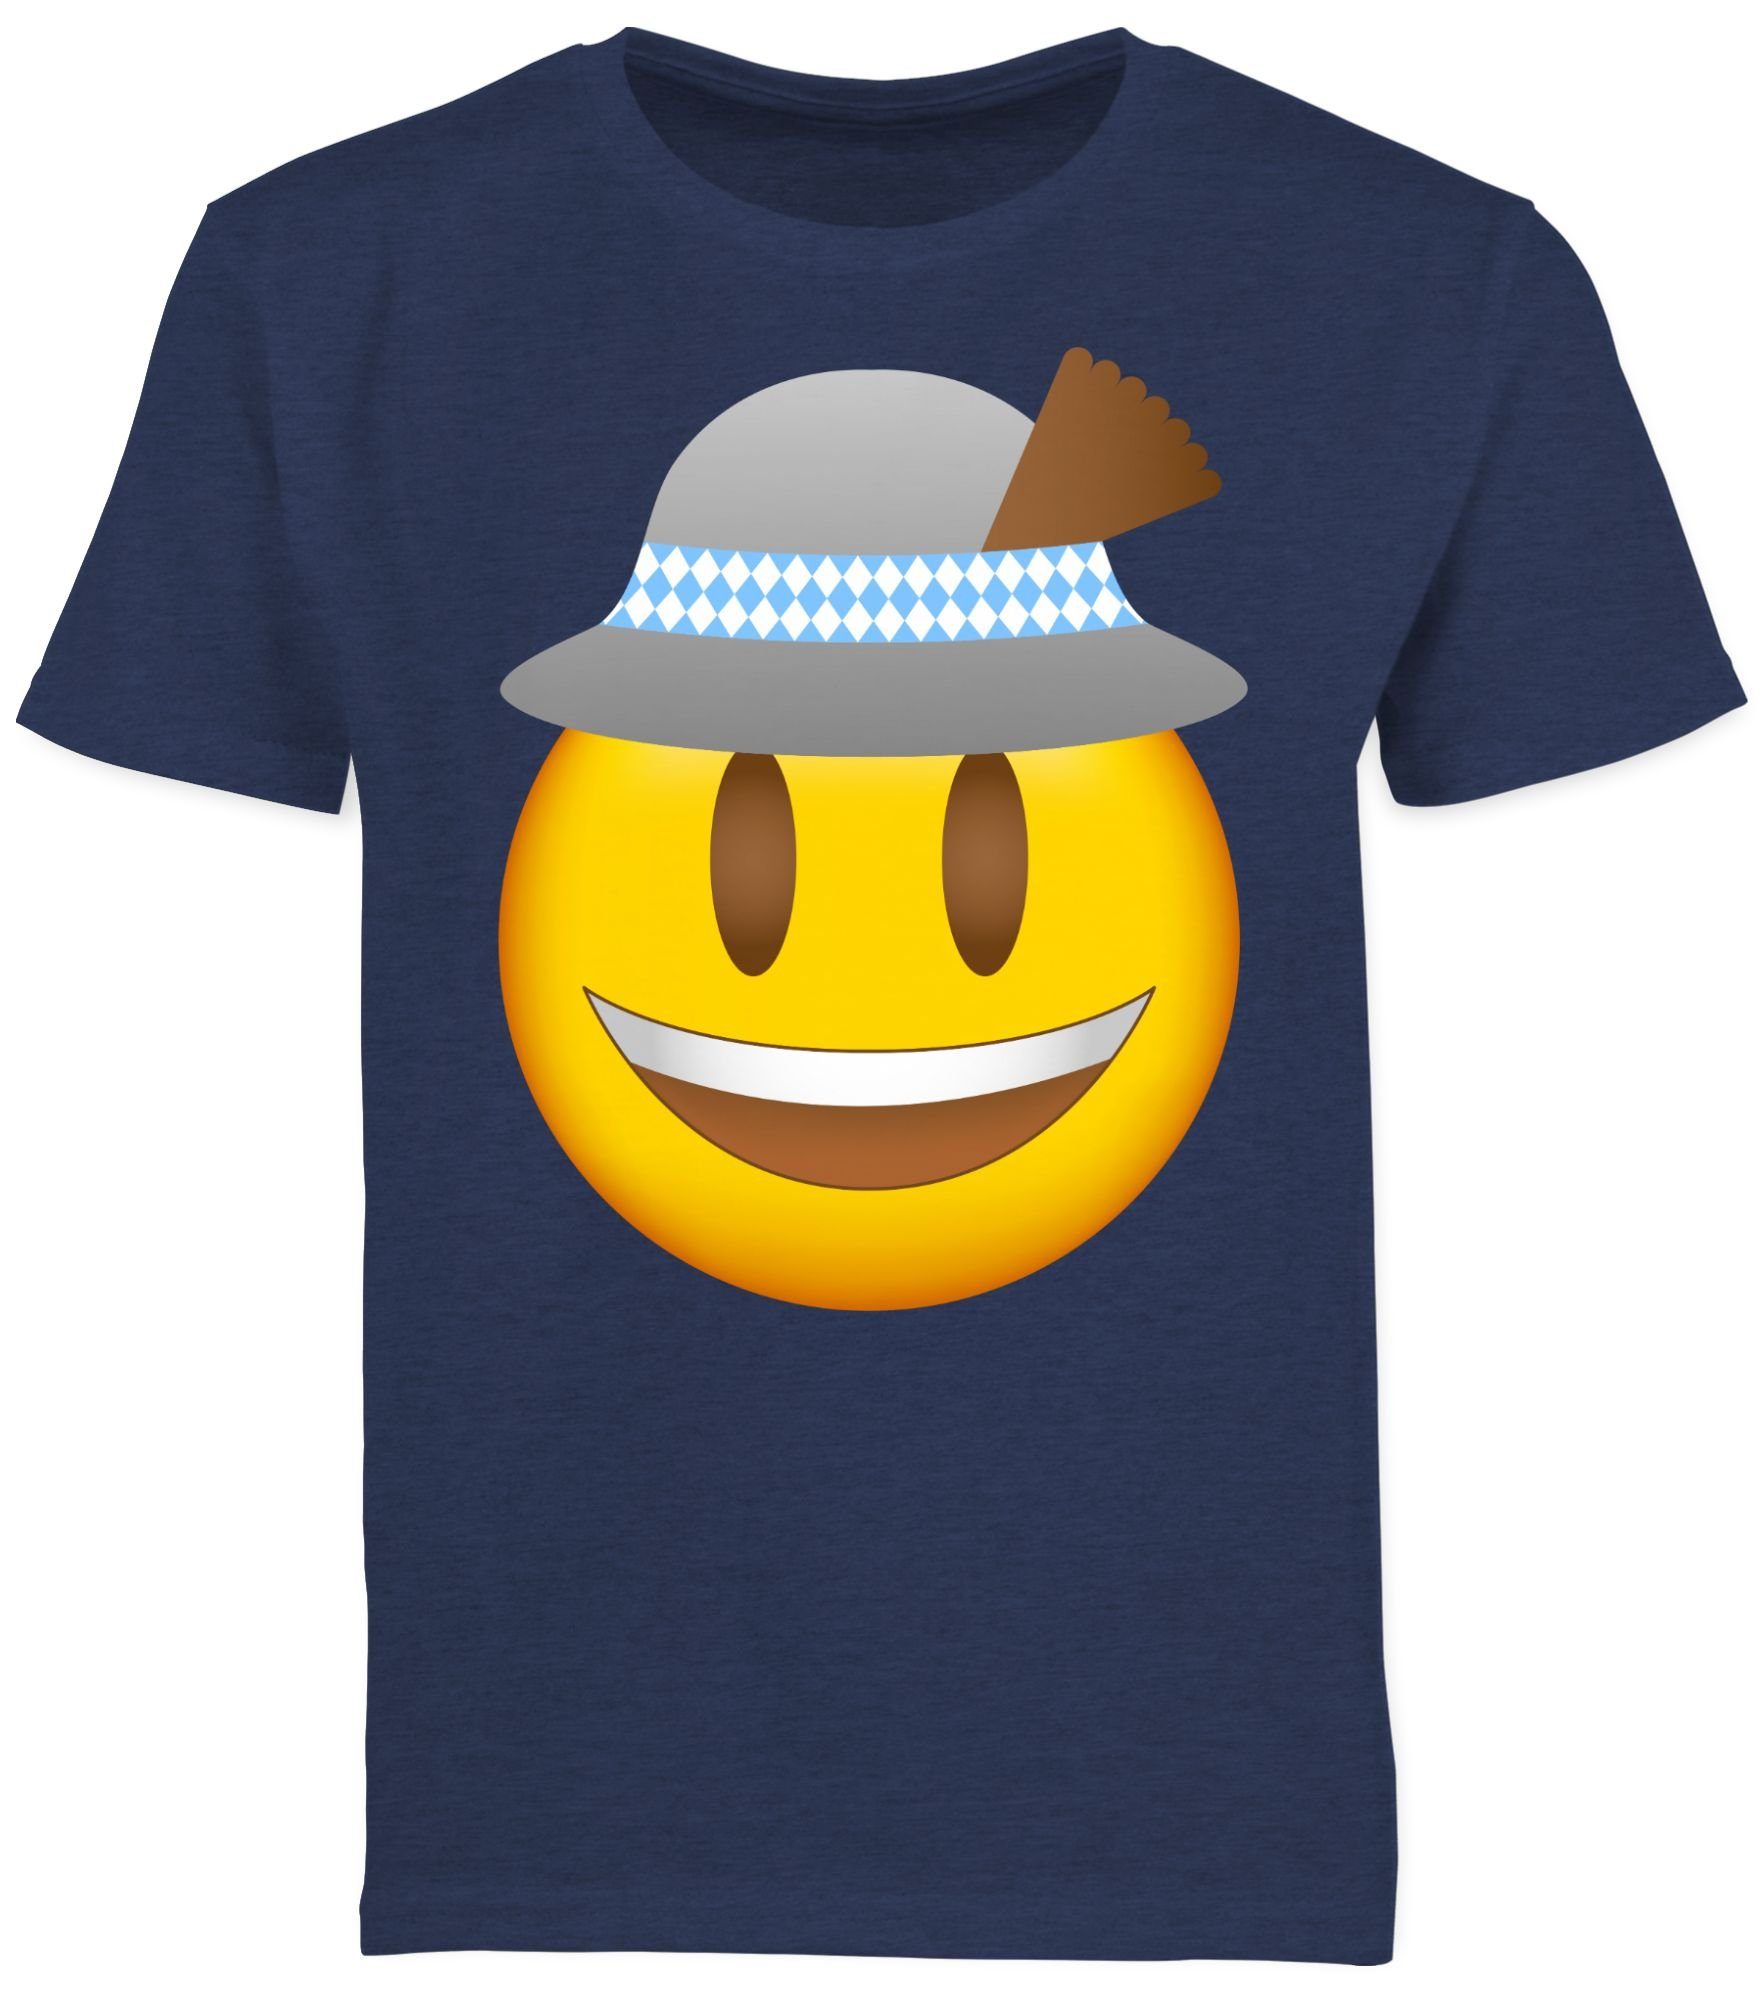 Mode T-Shirt Oktoberfest Kinder Meliert Hut für Outfit Dunkelblau Emoticon 3 Shirtracer mit Oktoberfest